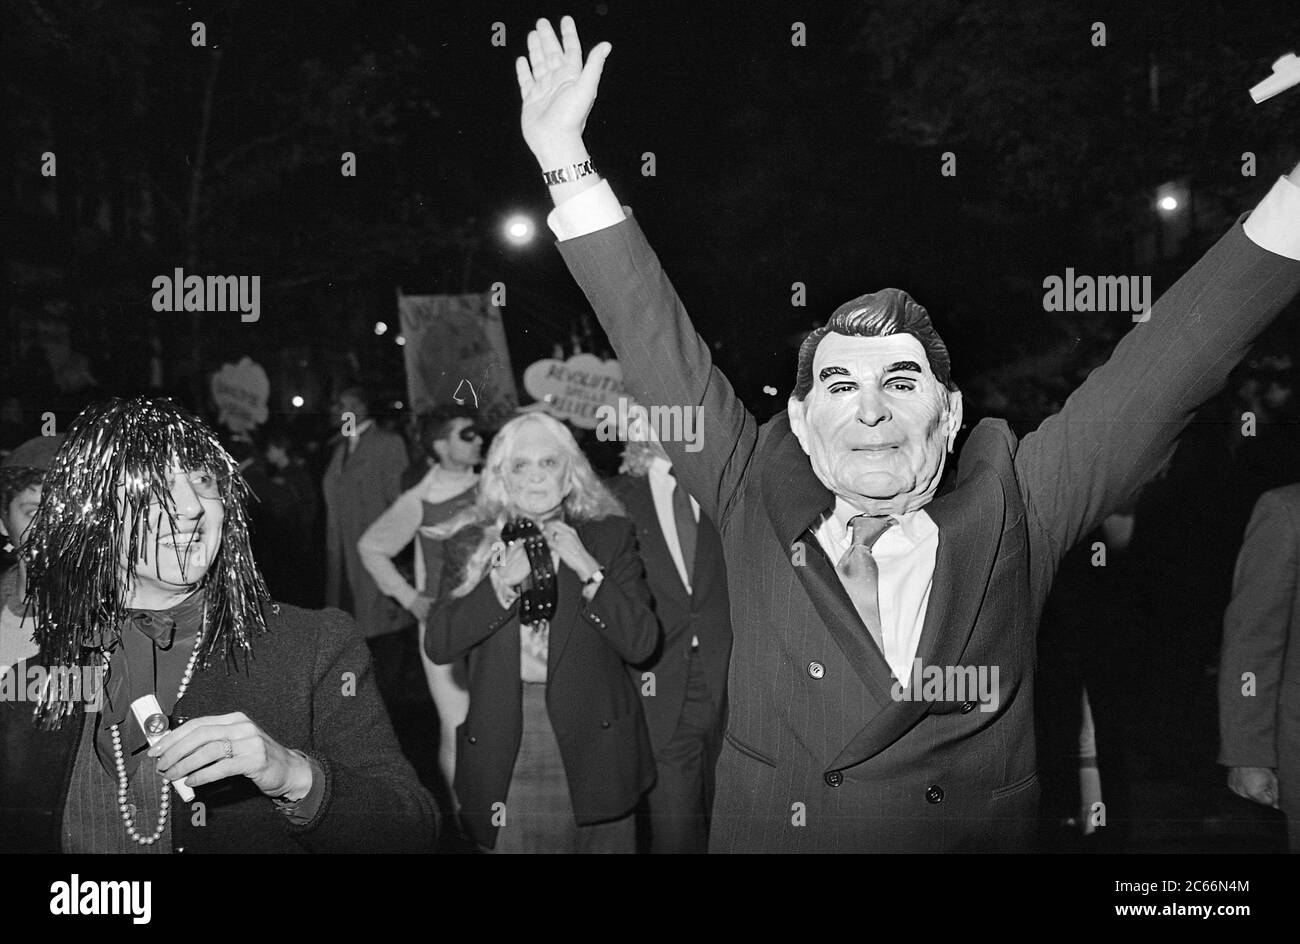 Falso Ronald Regan alla Greenwich Village Halloween Parade, New York City, USA negli anni '80 fotografato con film in bianco e nero di notte. Foto Stock